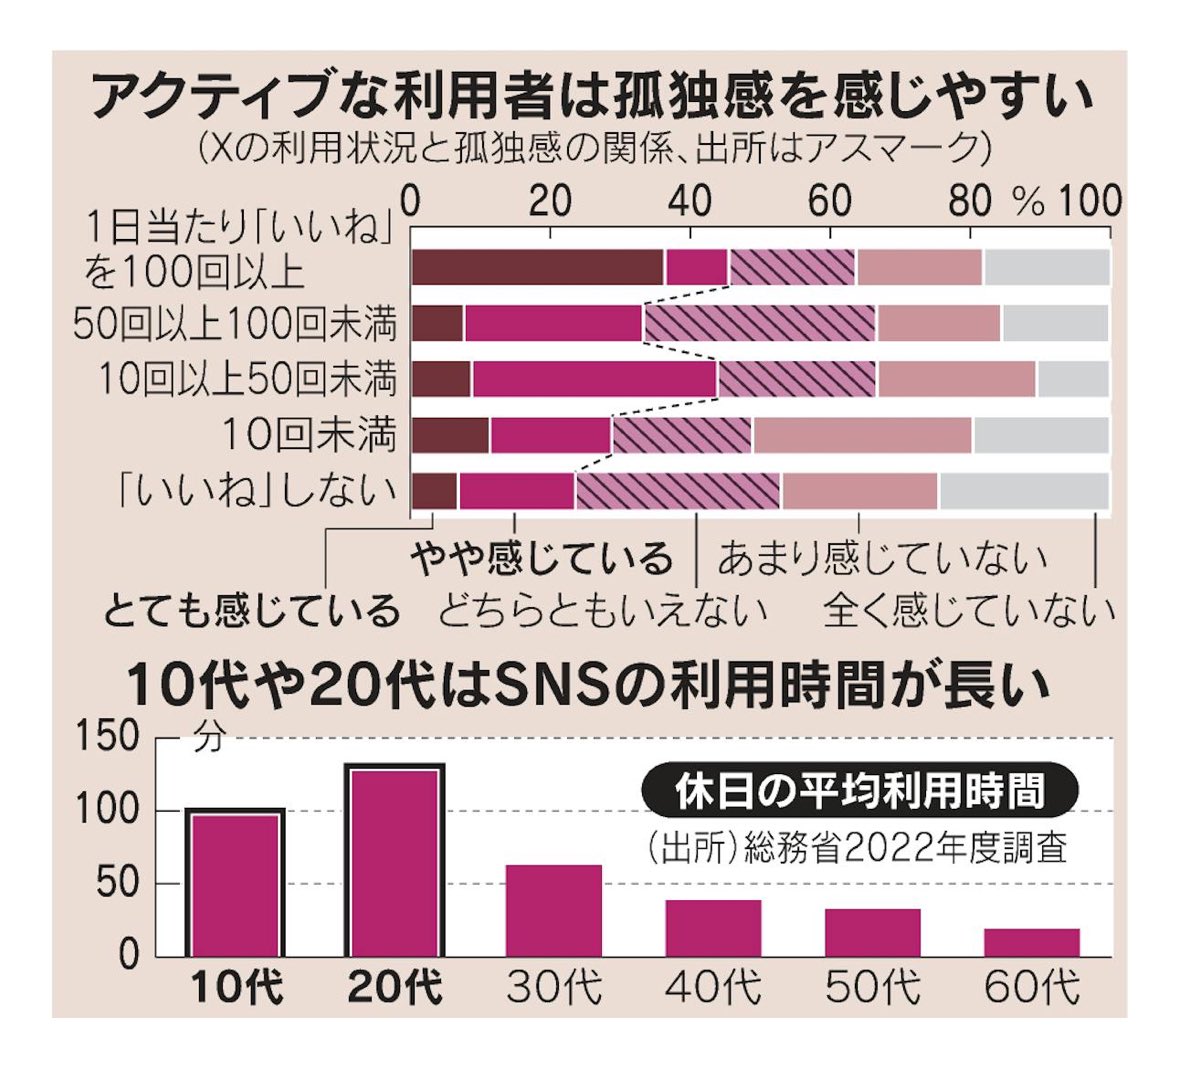 とても読み応えのある記事だった。孤独感を助長しているのはSNSであることは納得… '1日あたり「いいね」を100回以上押す人は、孤独を感じる比率が45.5%と「10回未満」の28.8%などと比べて高かった' AIは人の心を癒やせるか　日本人4割に「孤独感」の現実：日本経済新聞 nikkei.com/article/DGXZQO…